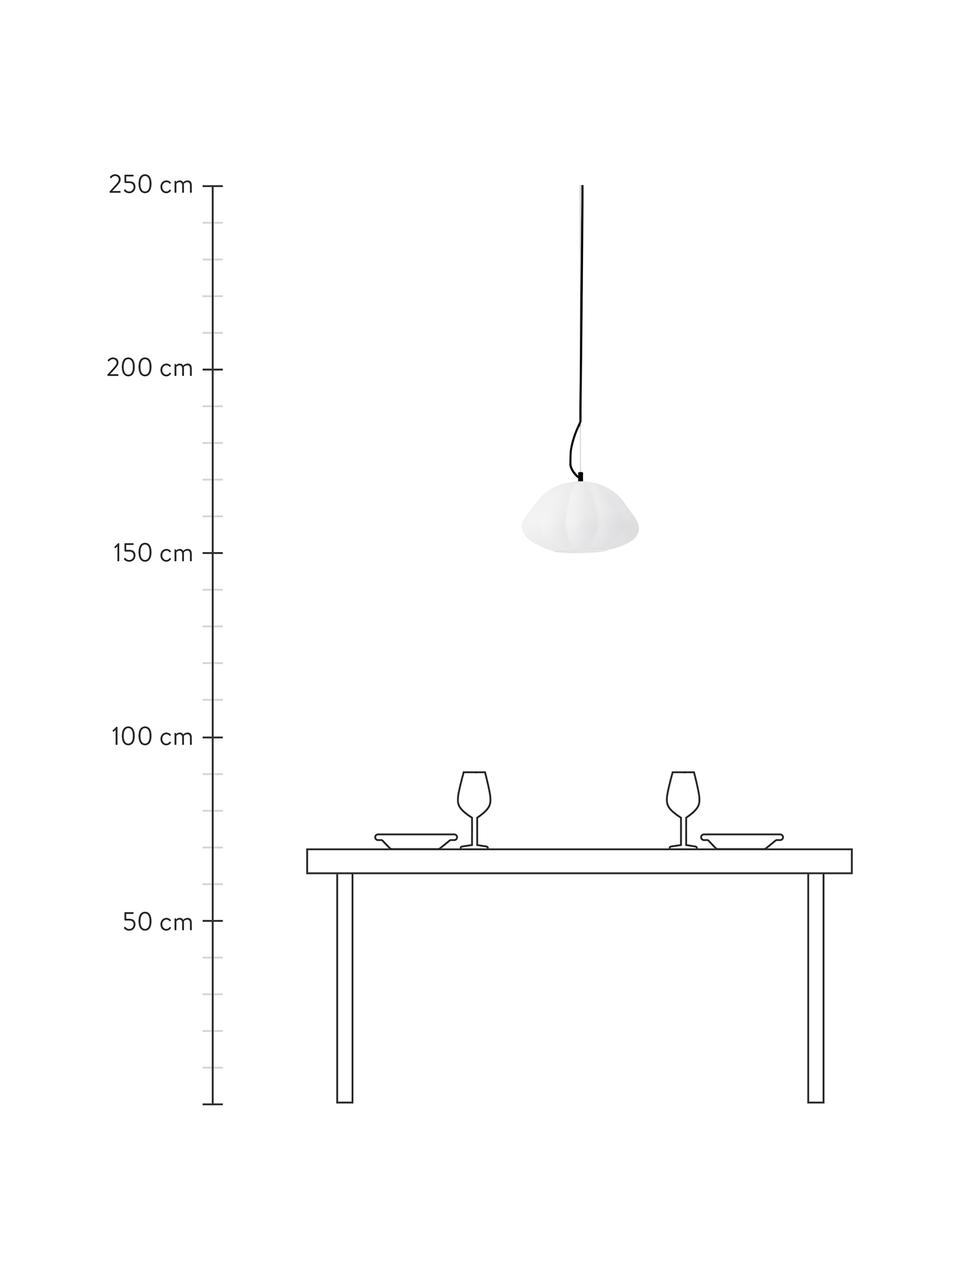 Hanglamp Elba in organisch vorm, Lampenkap: glas, Baldakijn: gecoat metaal, Crèmewit, Ø 32 x H 17 cm